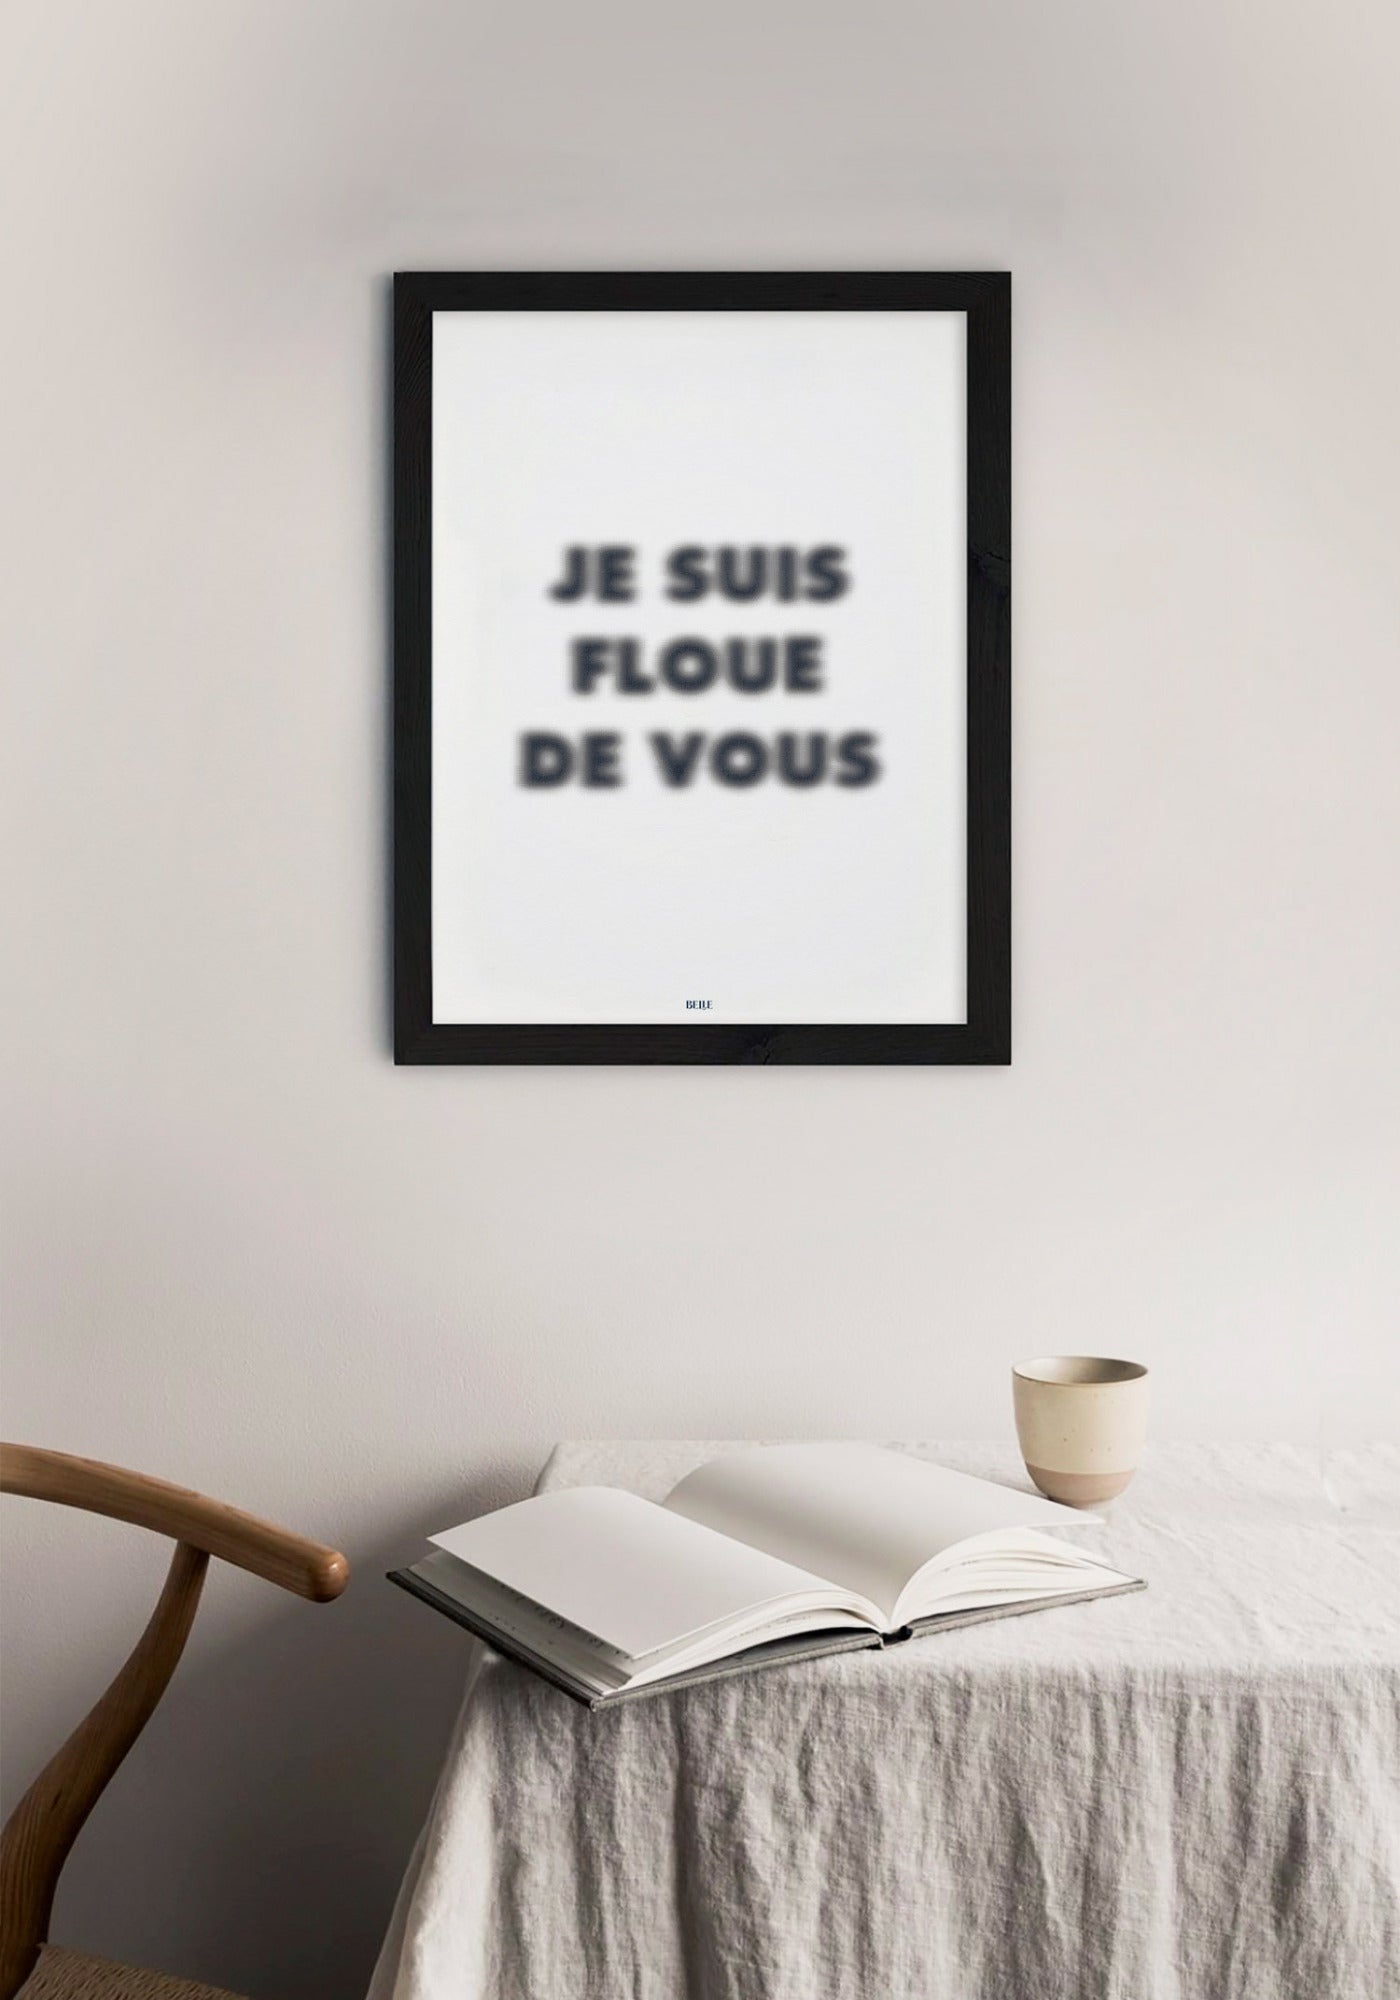 L'affiche typographique "Je suis flou de vous" en 21x30 cm de chez Studio Topo accrochée au mur